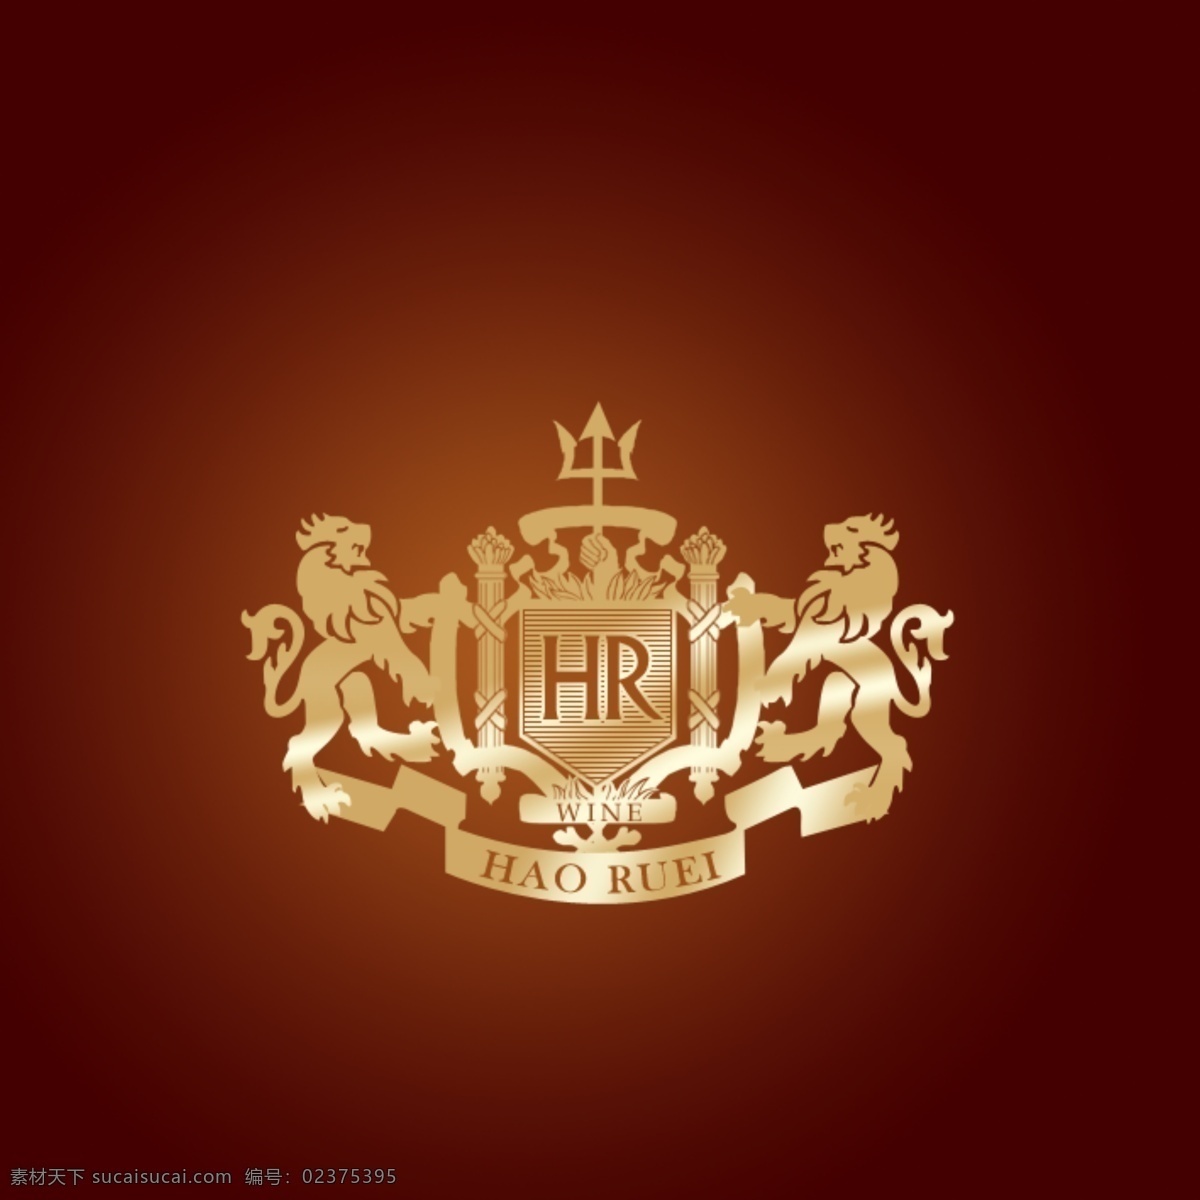 红酒 logo 标志 标志设计 创意 广告设计模板 狮子 源文件 炀 苐 ogo hr psd源文件 logo设计